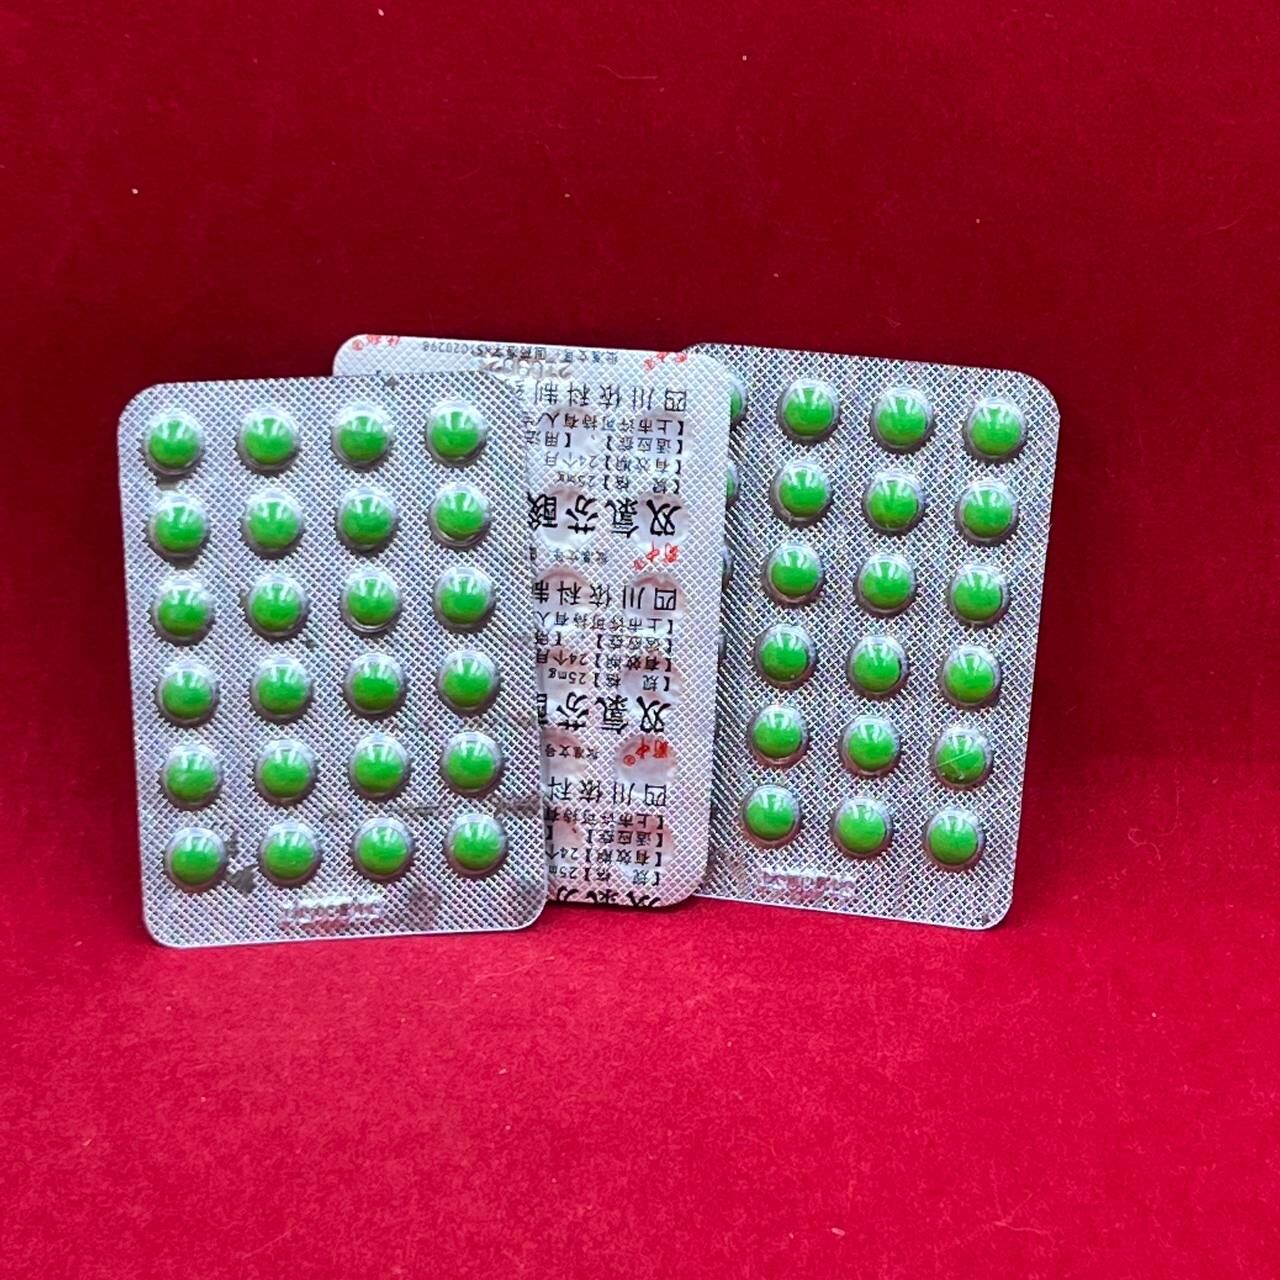 Суставит таблетки для суставов (Shuang lu fen shuan na) 24 табл